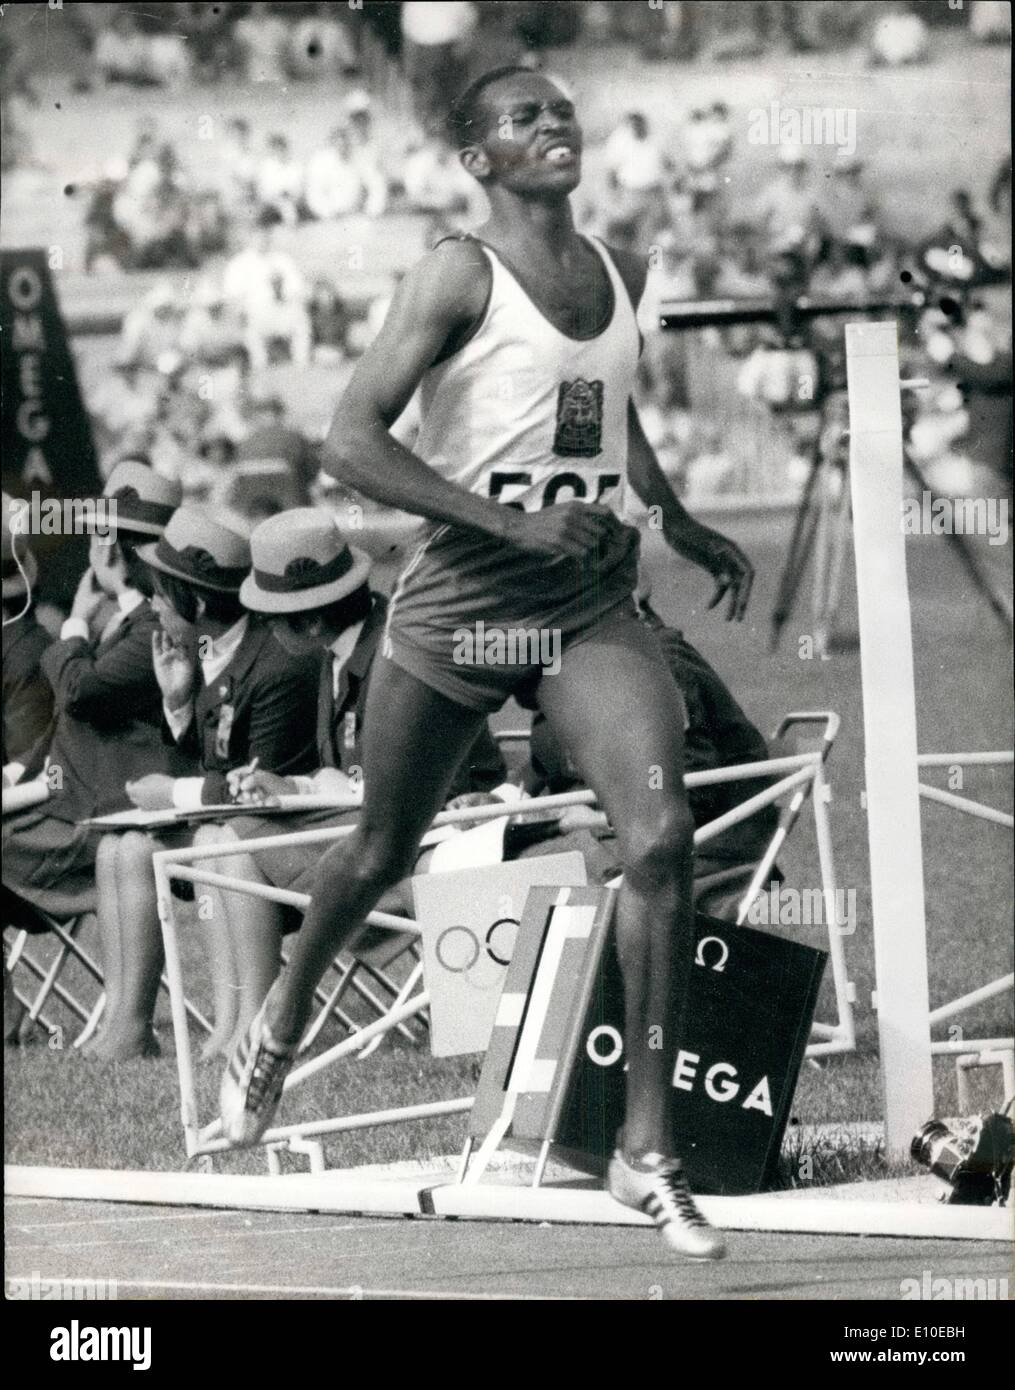 Agosto 08, 1972 - Kip Keino fuori delle Olimpiadi: Presidente Jomo Kenyatta ha ordinato il suo Olympic home se Rhodesia è consentito di rimanere in giochi a Monaco di Baviera. Il Kenya ha tre regnante campioni olimpici, Kip Keino, (1500 metri) Amos Biwott (3.000 metri di siepi) e Naftali Temu (10.000 metri). La foto mostra il Kip Keino vincendo il 1500 metri di gara in Messico 1968. Foto Stock